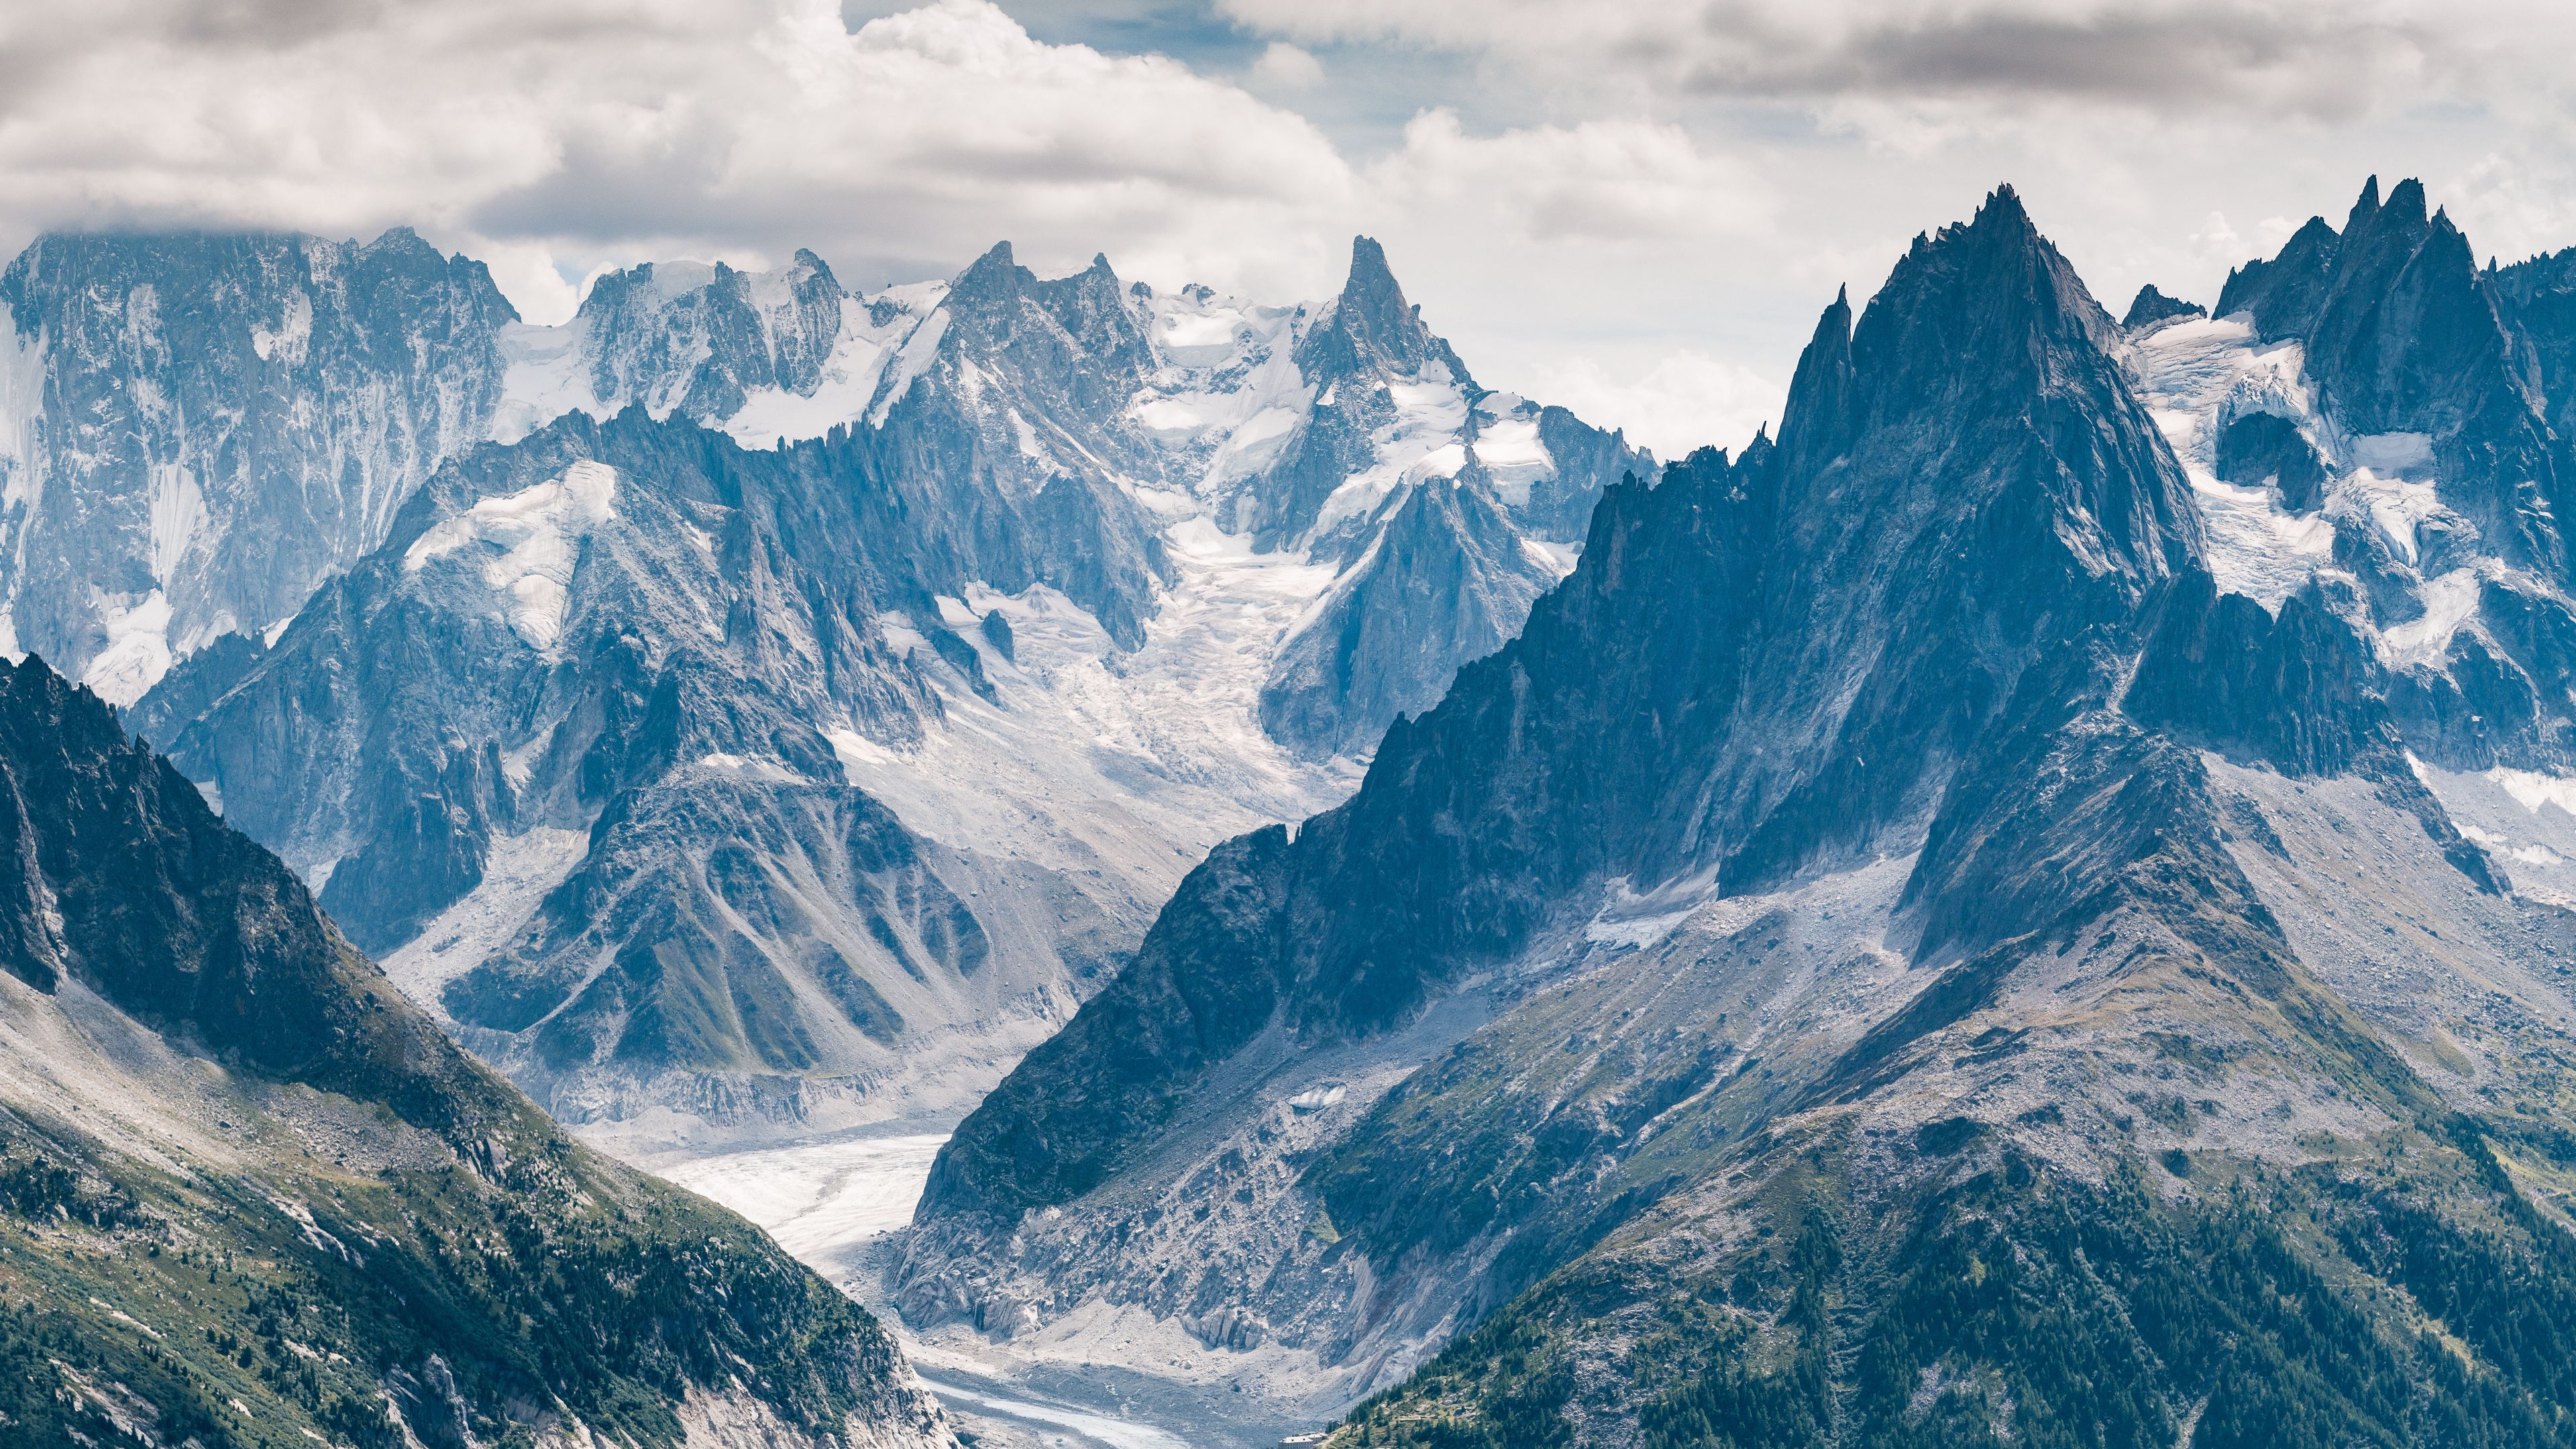 General 3840x2160 Chamonix Mont Blanc France landscape mountains nature